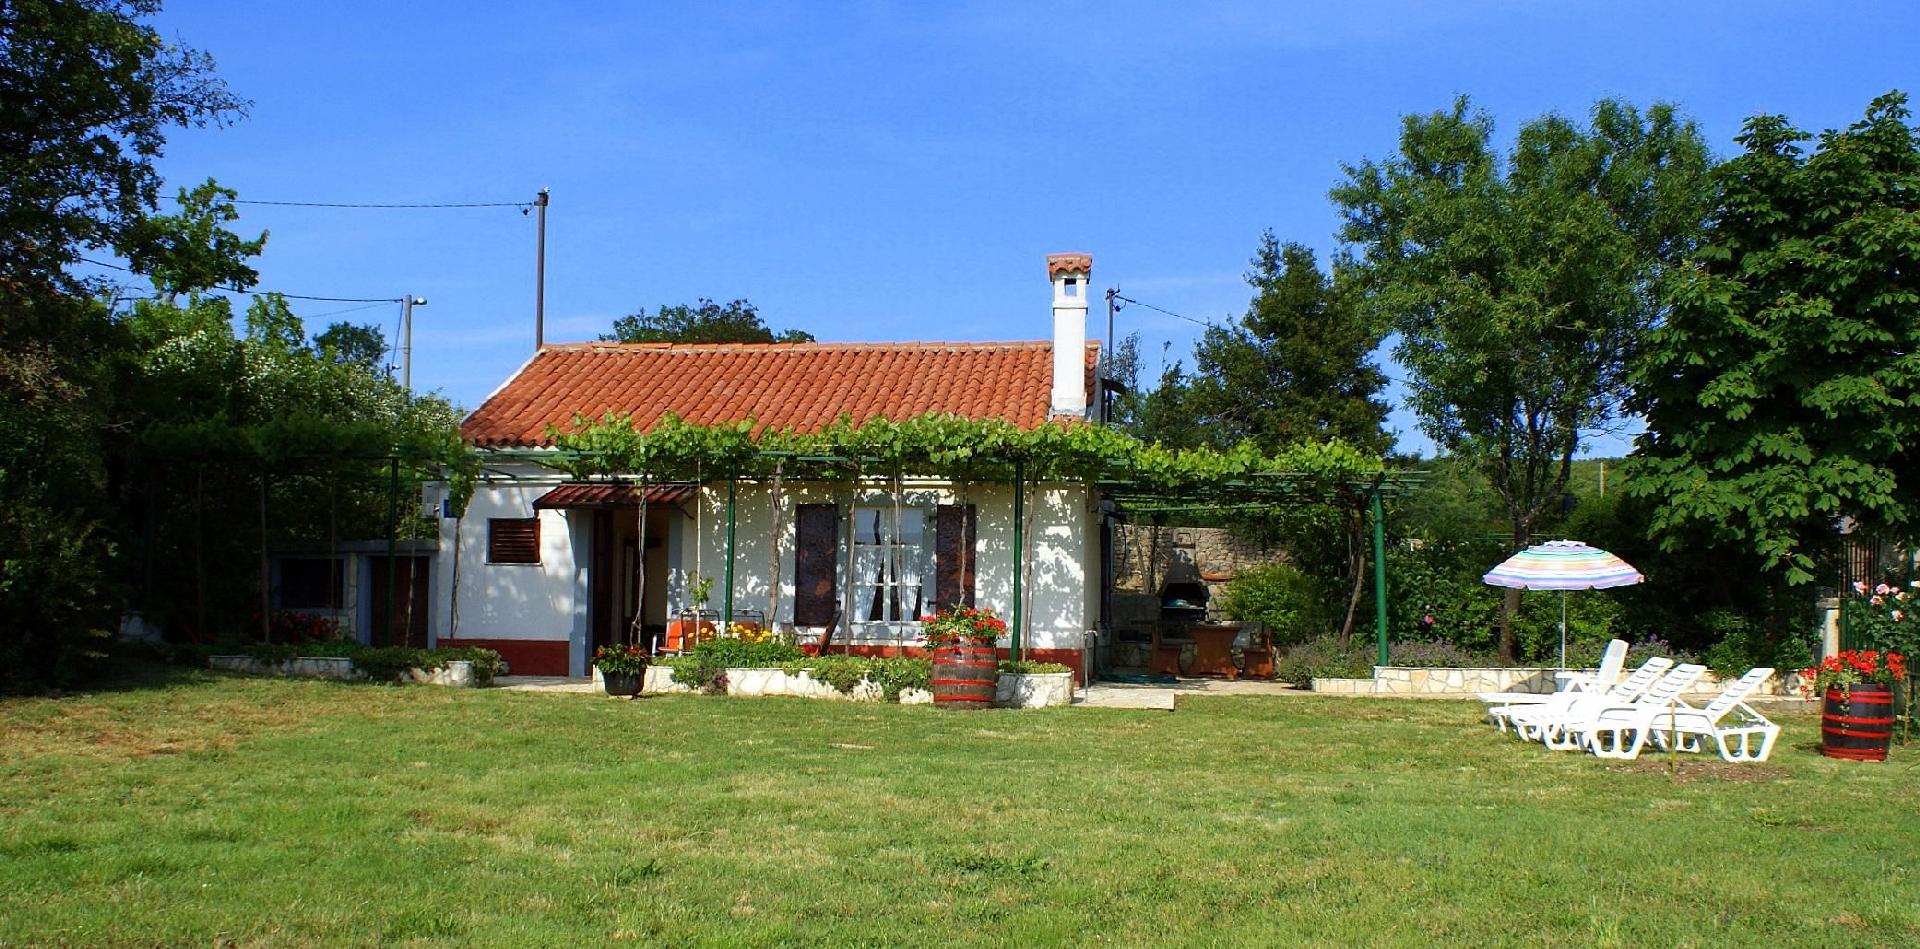 Freistehendes Ferienhaus mit traditionellem Steing Ferienhaus in Europa